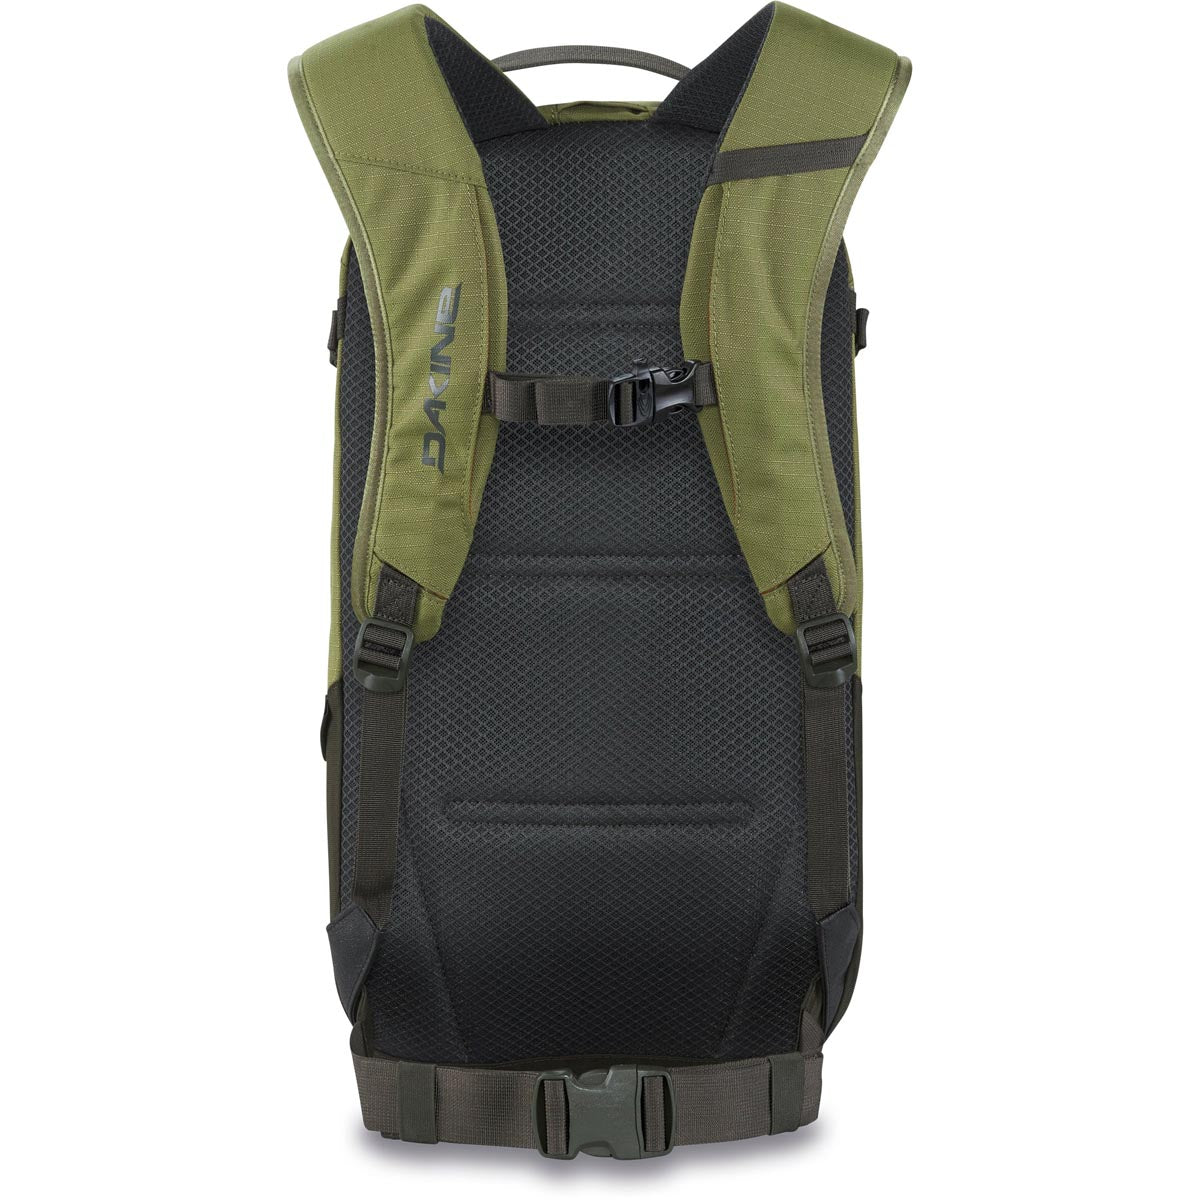 Dakine Heli Pack 12l Backpack - Utility Green image 2